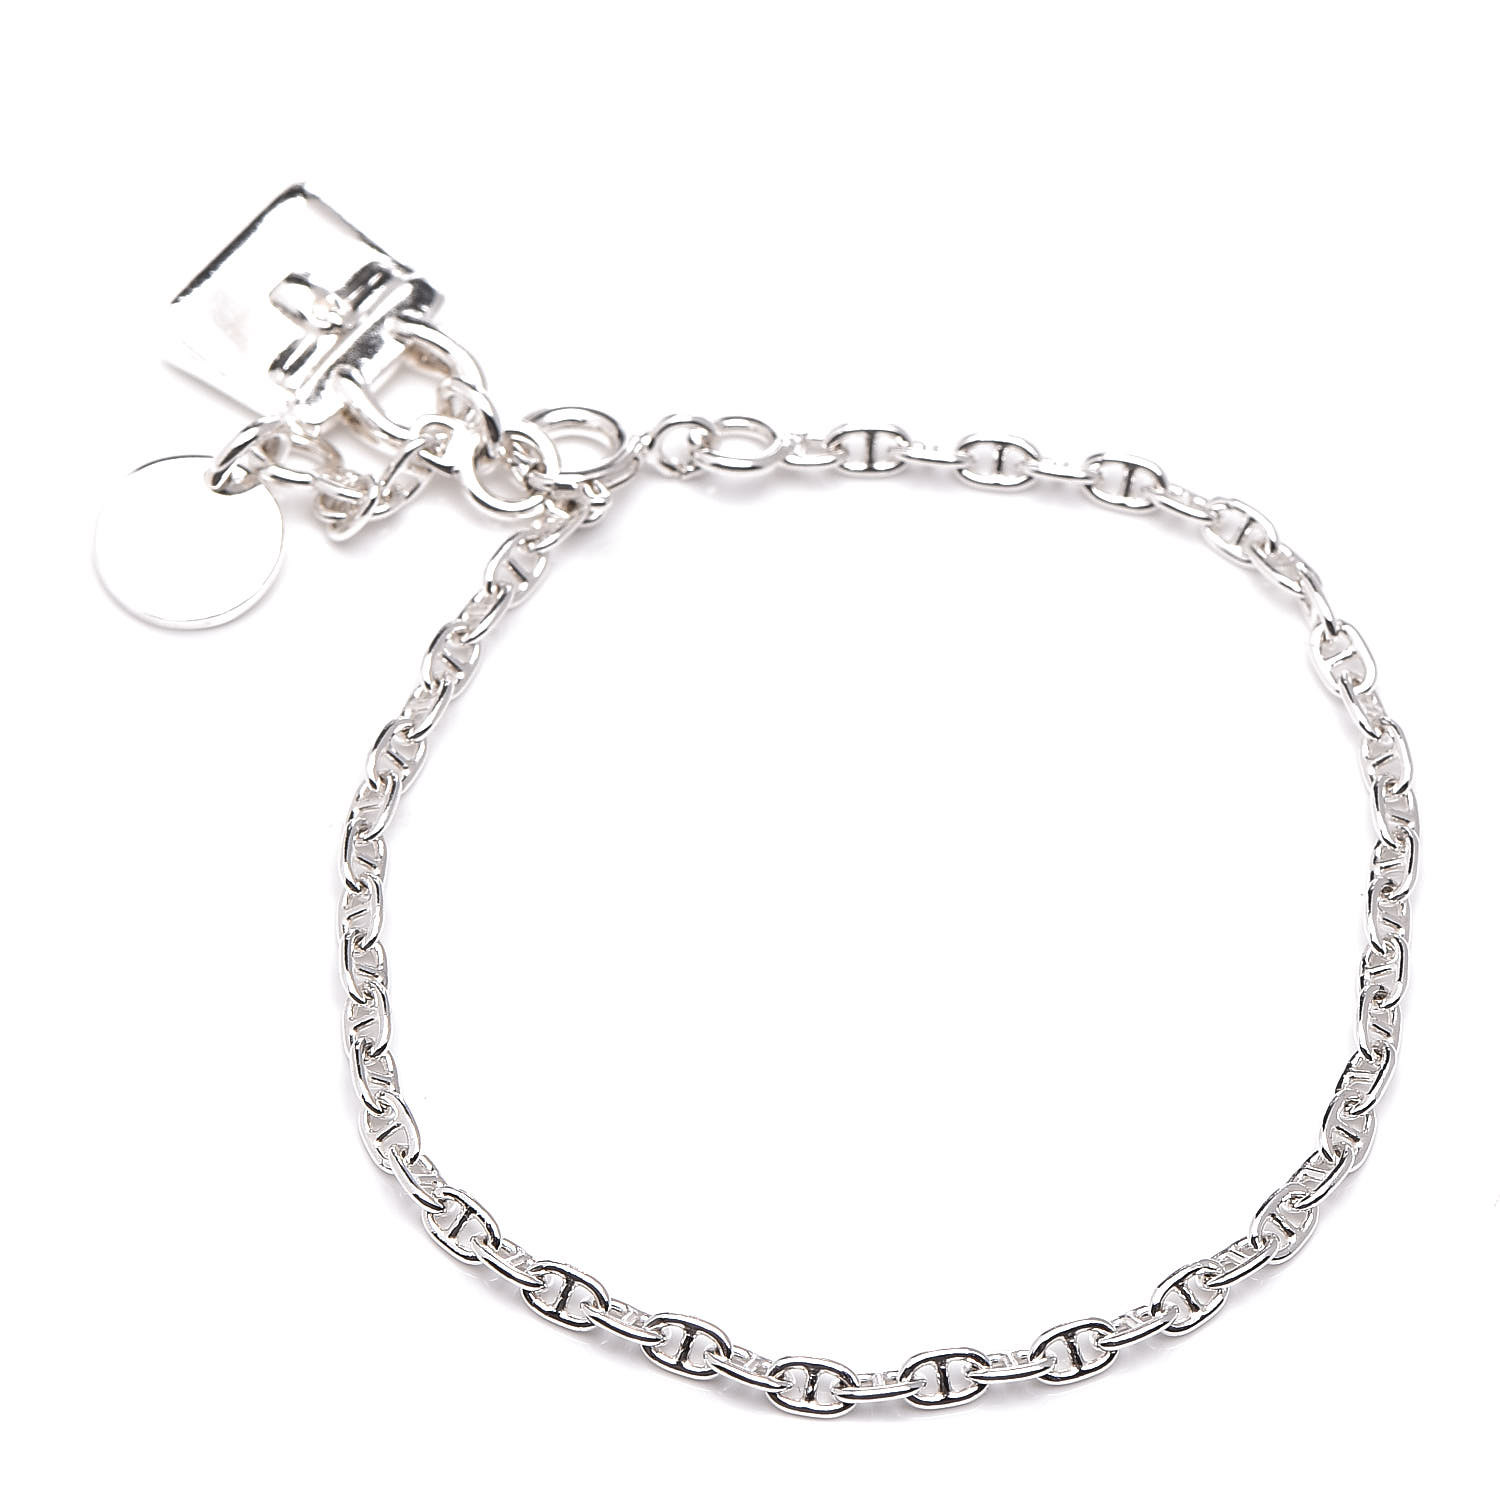 HERMES Sterling Silver Mini Birkin Amulette Bracelet SH 381891